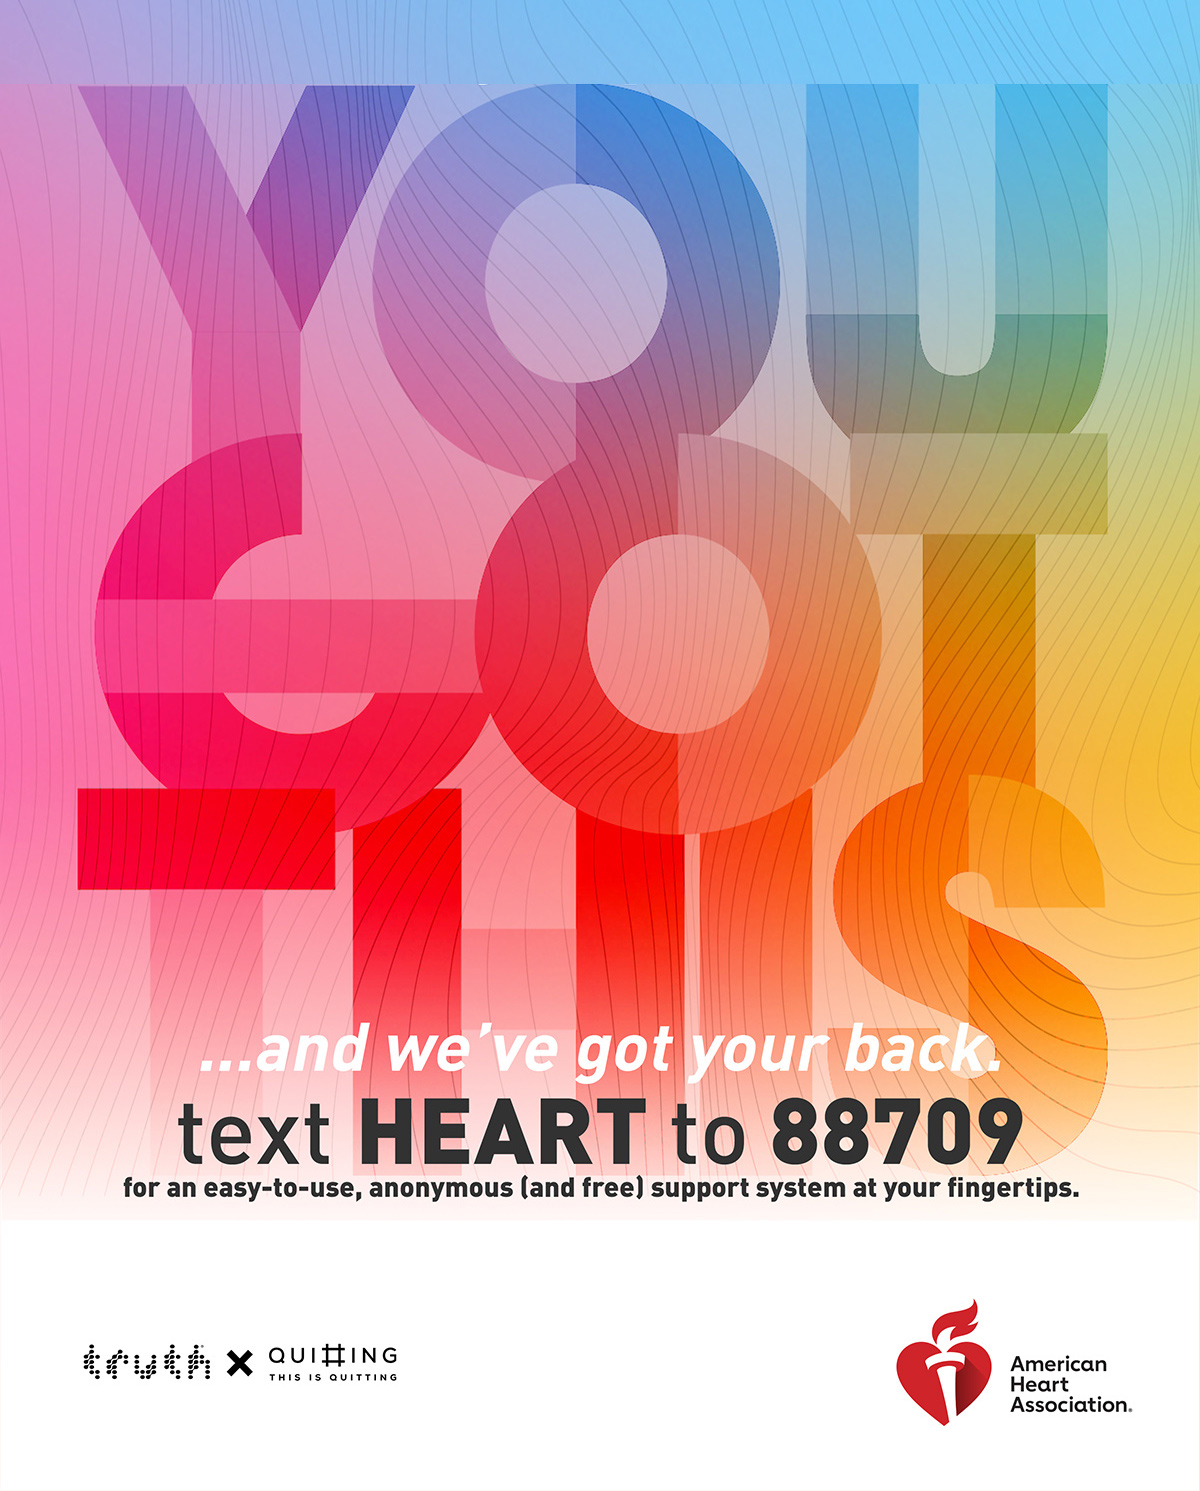 Lo tiene. Envíe la palabra HEART al 88709 para tener un sistema de apoyo anónimo fácil de usar y gratuito a su alcance